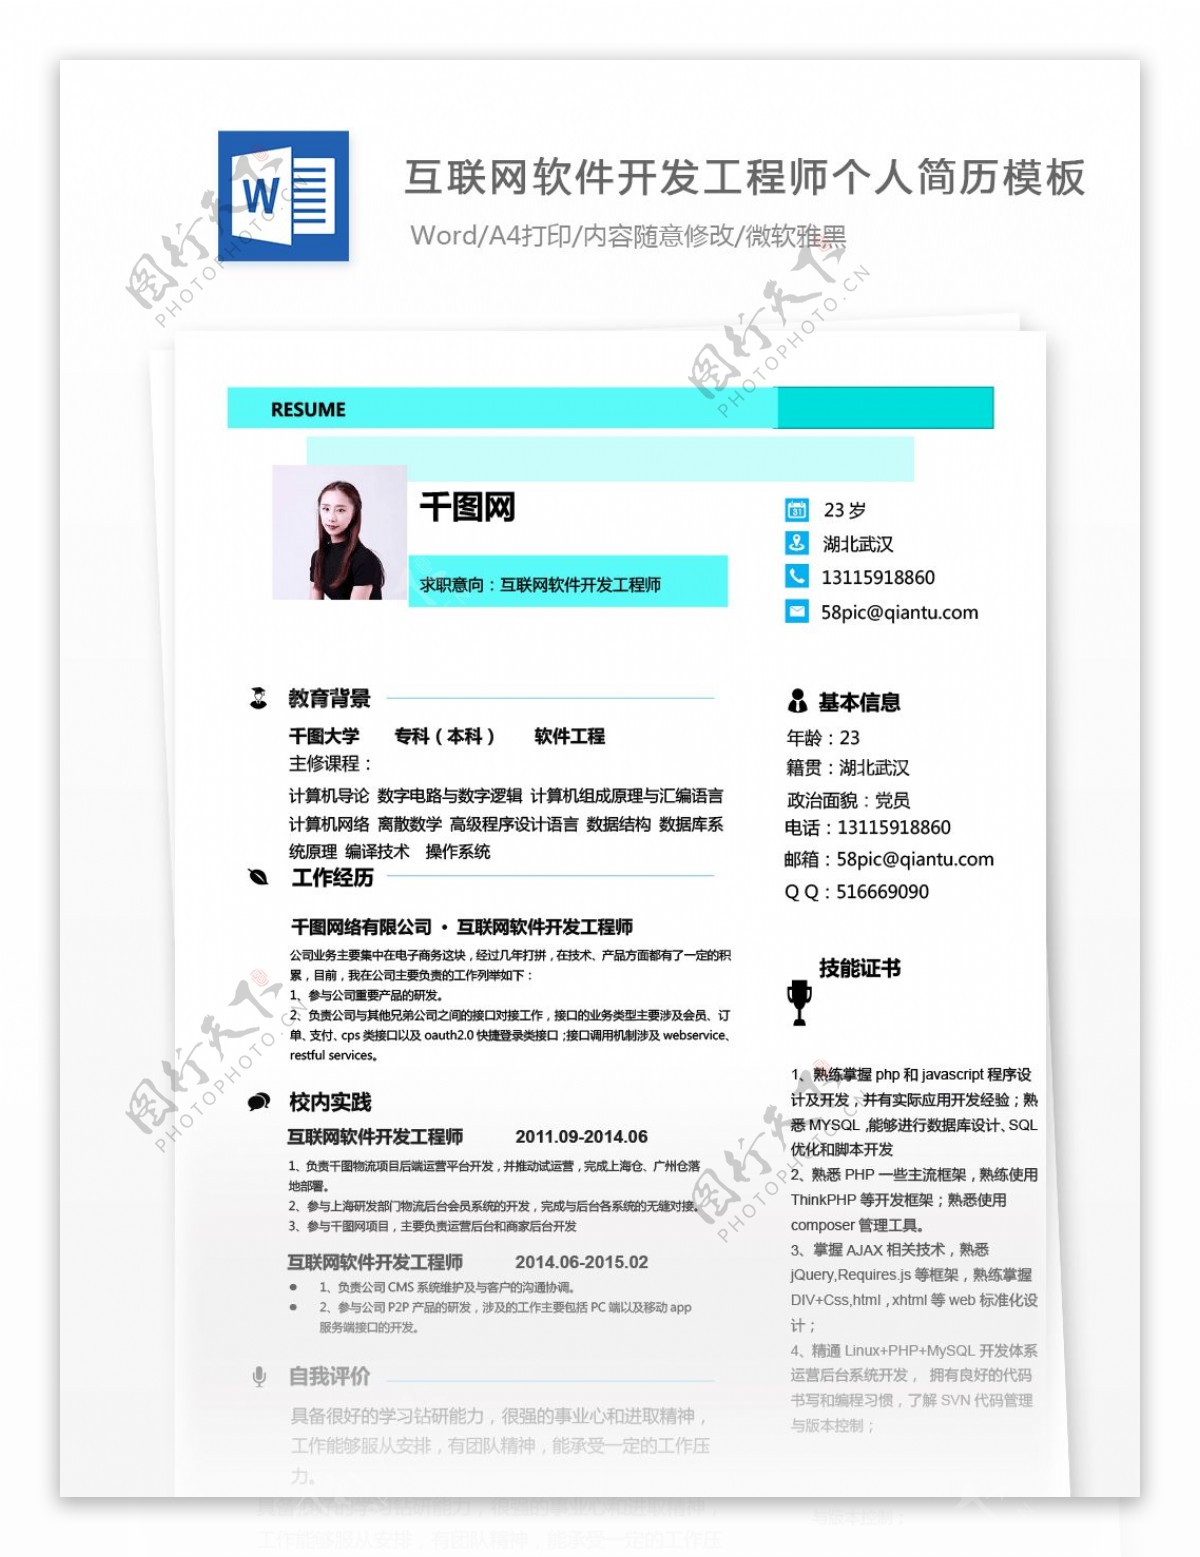 黃淑娟互联网软件开发工程师个人简历模板